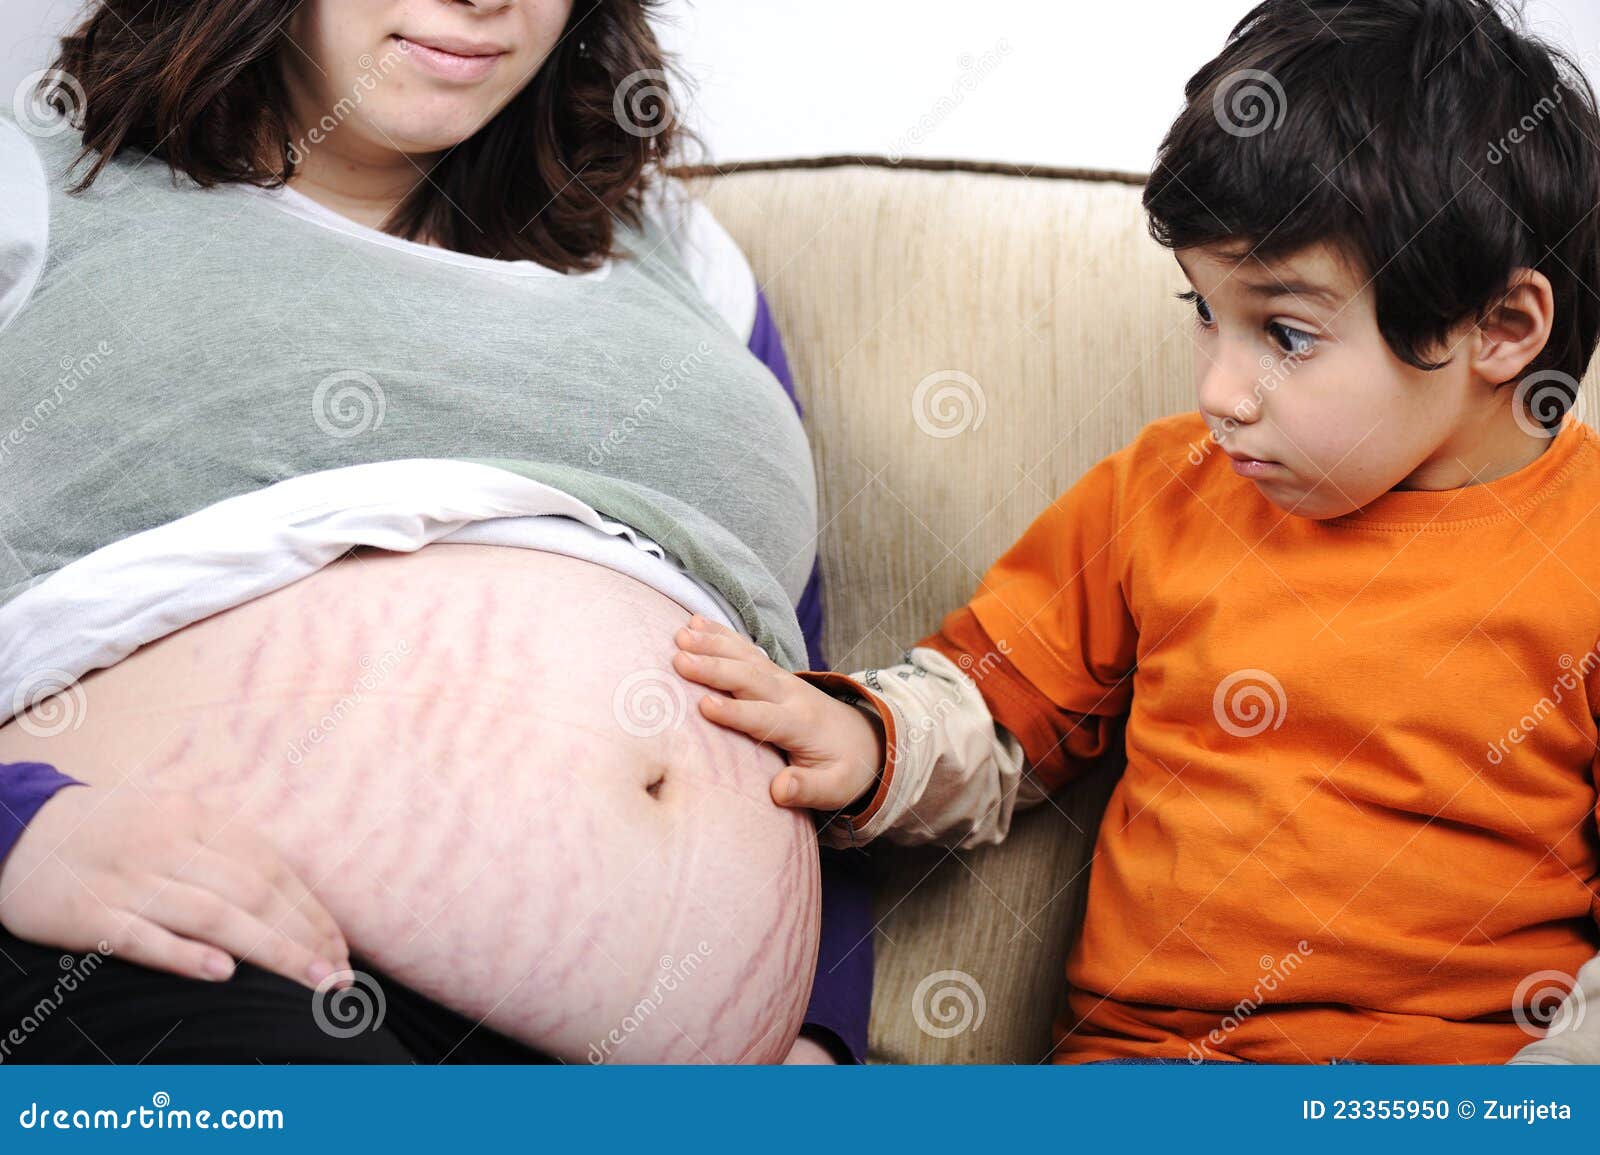 Фото беременный мальчик. Животы беременных мальчиками. Беременный живот мальчиком и девочкой.